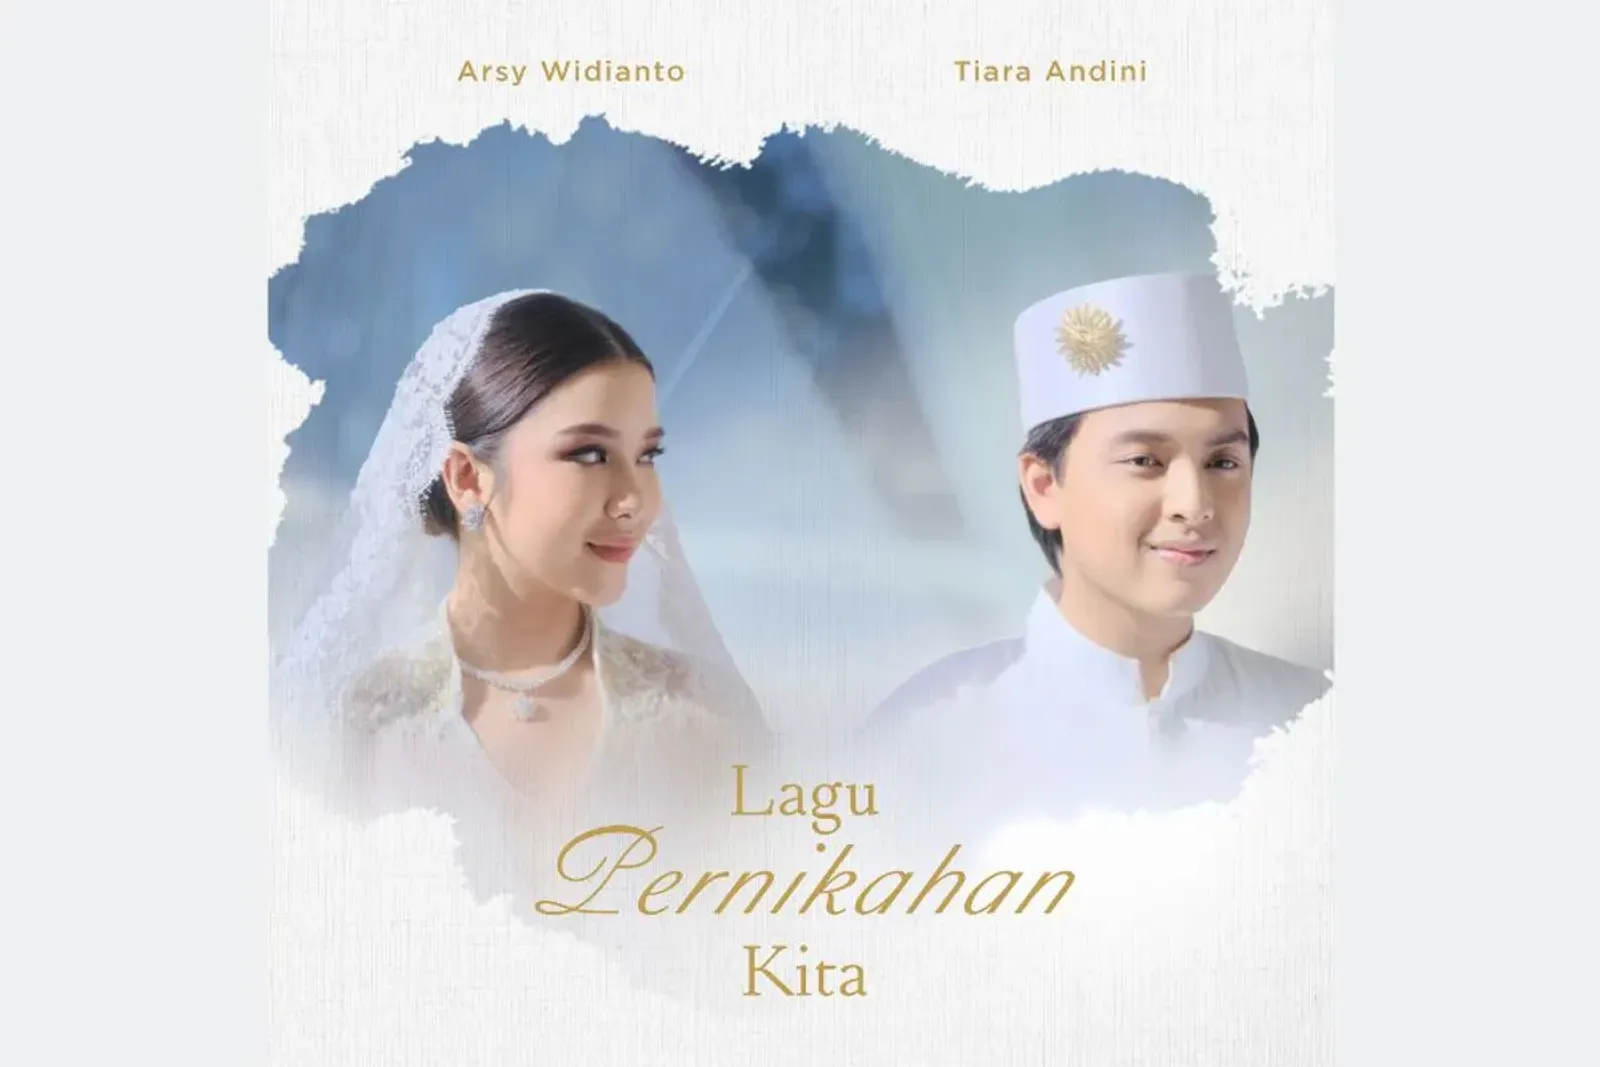 Lirik dan Makna "Lagu Pernikahan Kita" Arsy Widianto & Tiara Andini